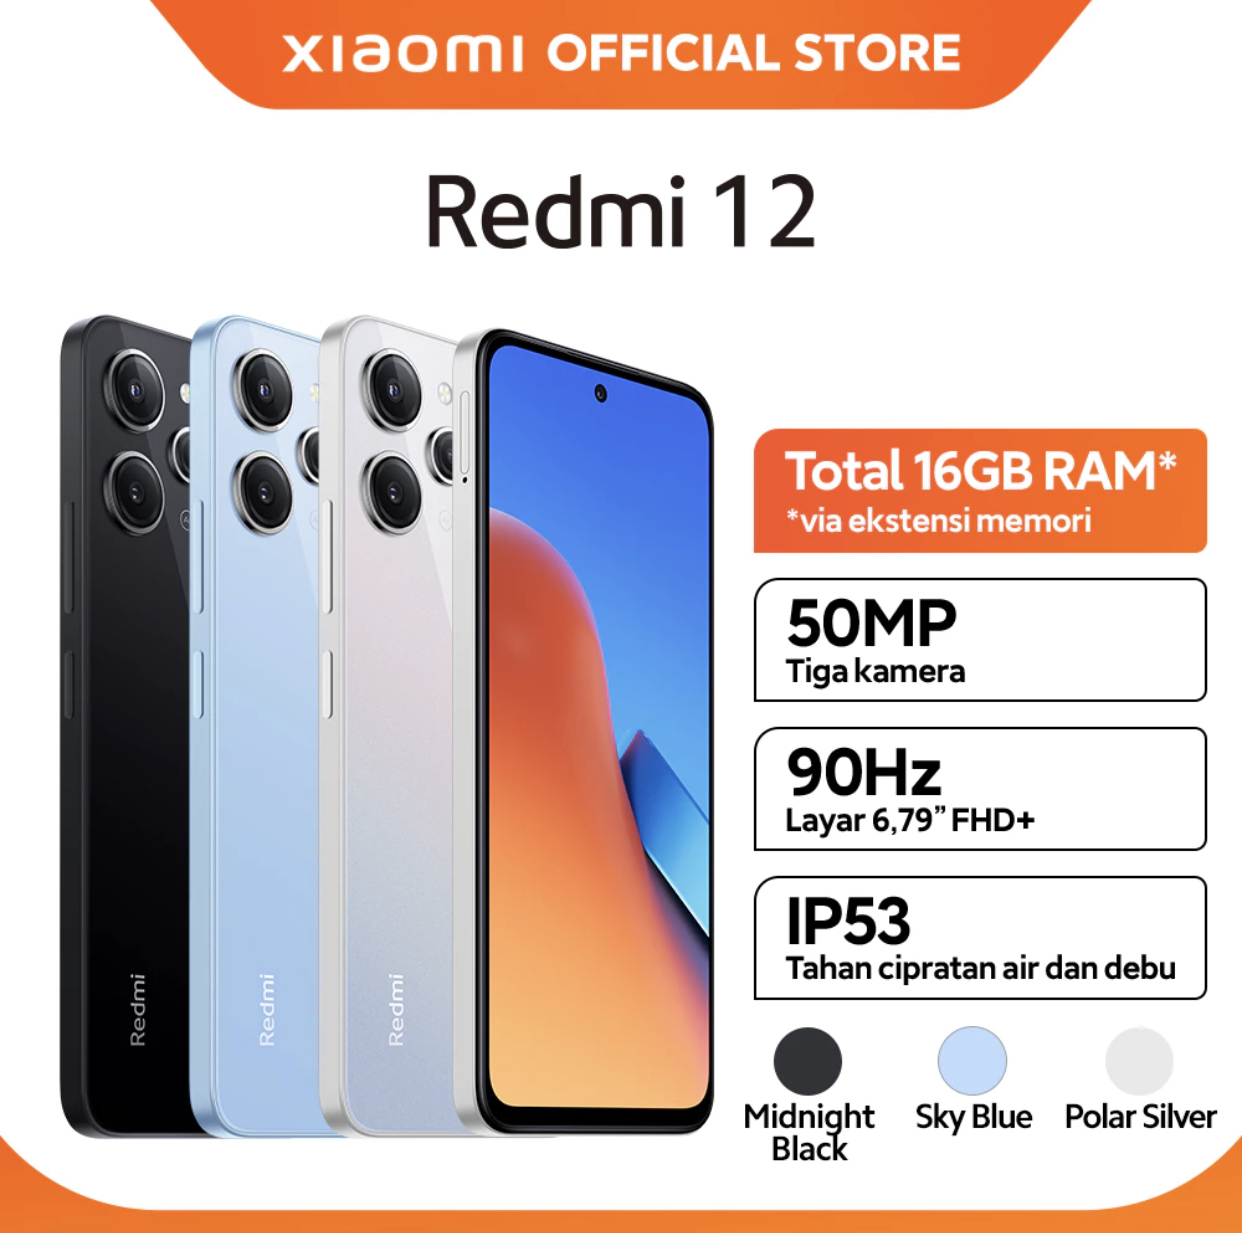 3. Xiaomi redmi 12